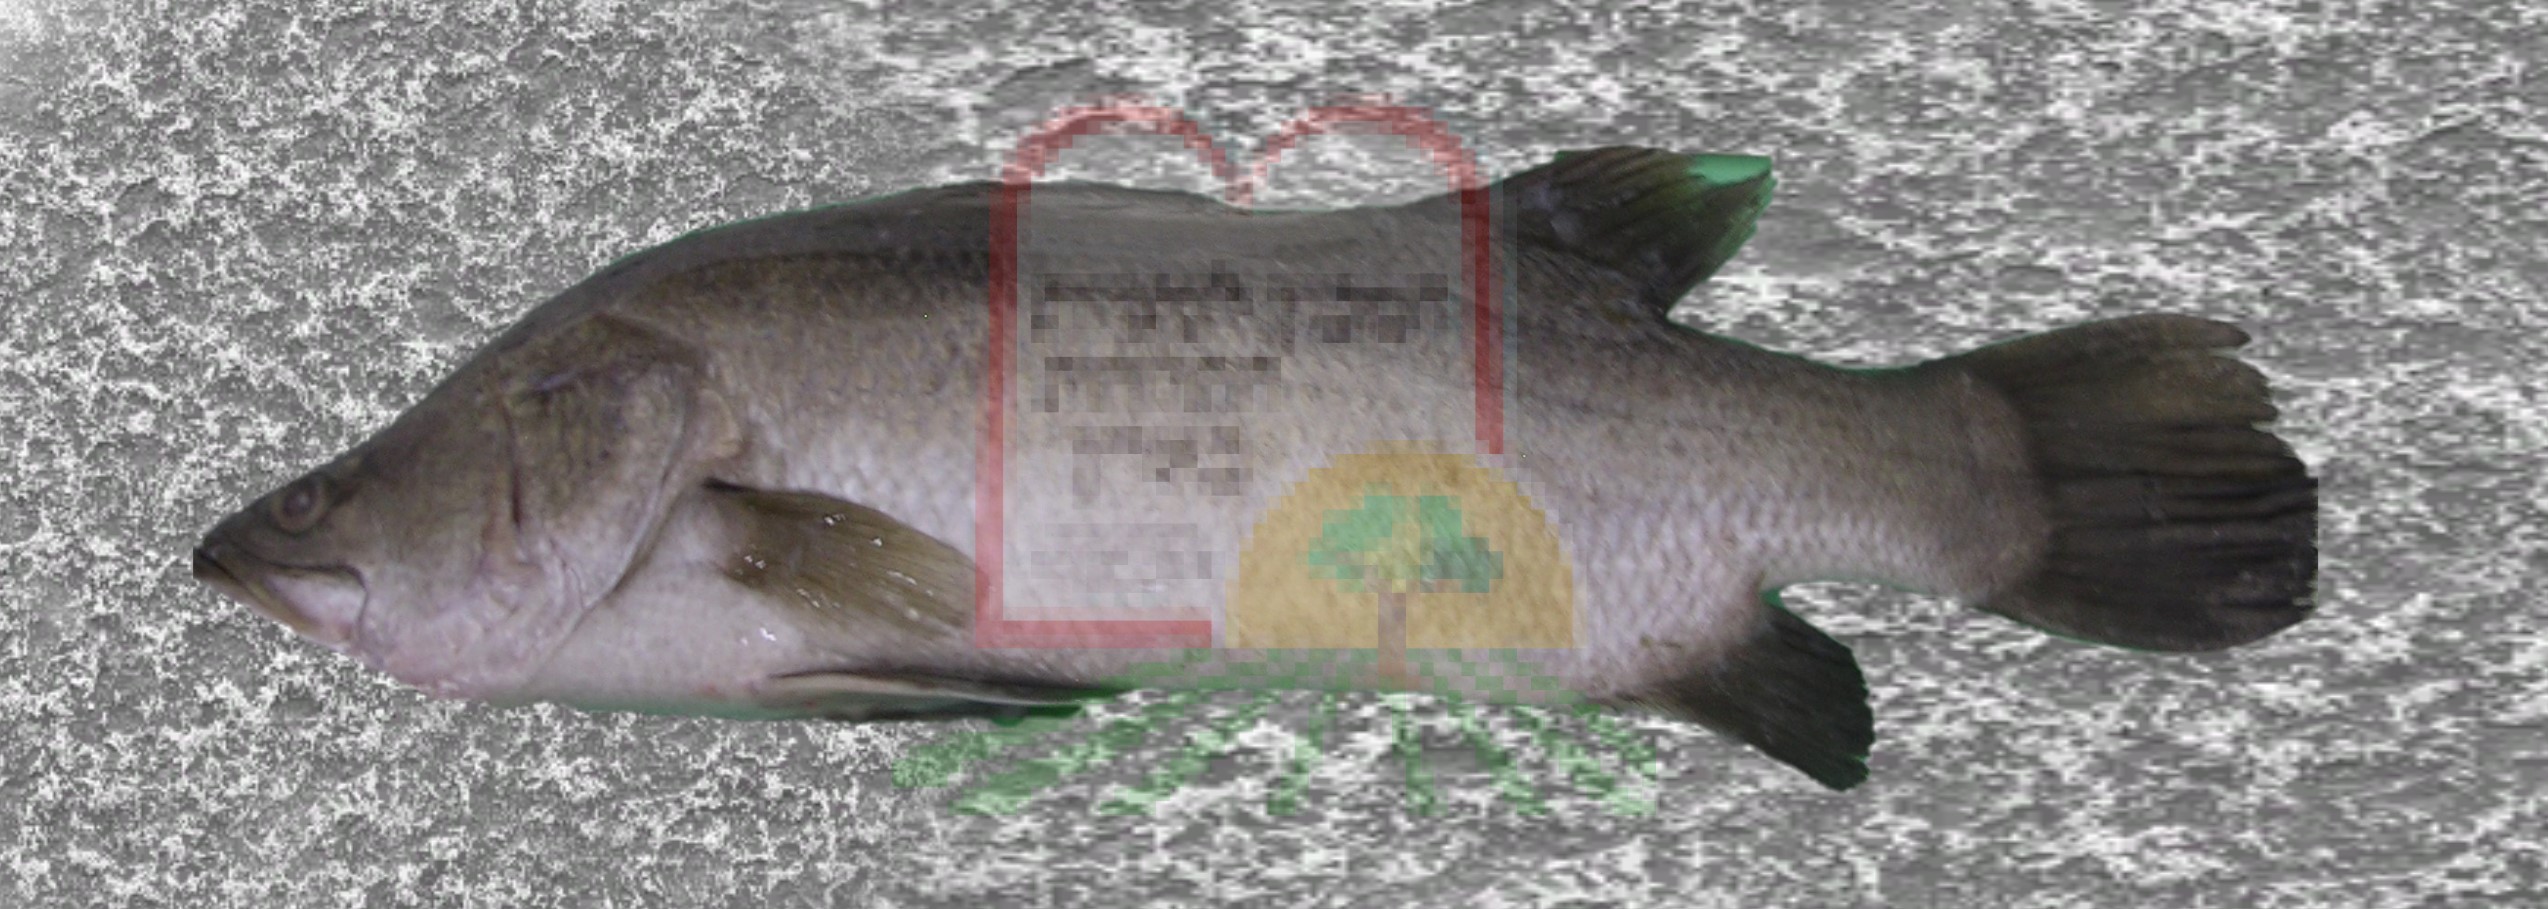 דג ברמונדי מבריכות גידול